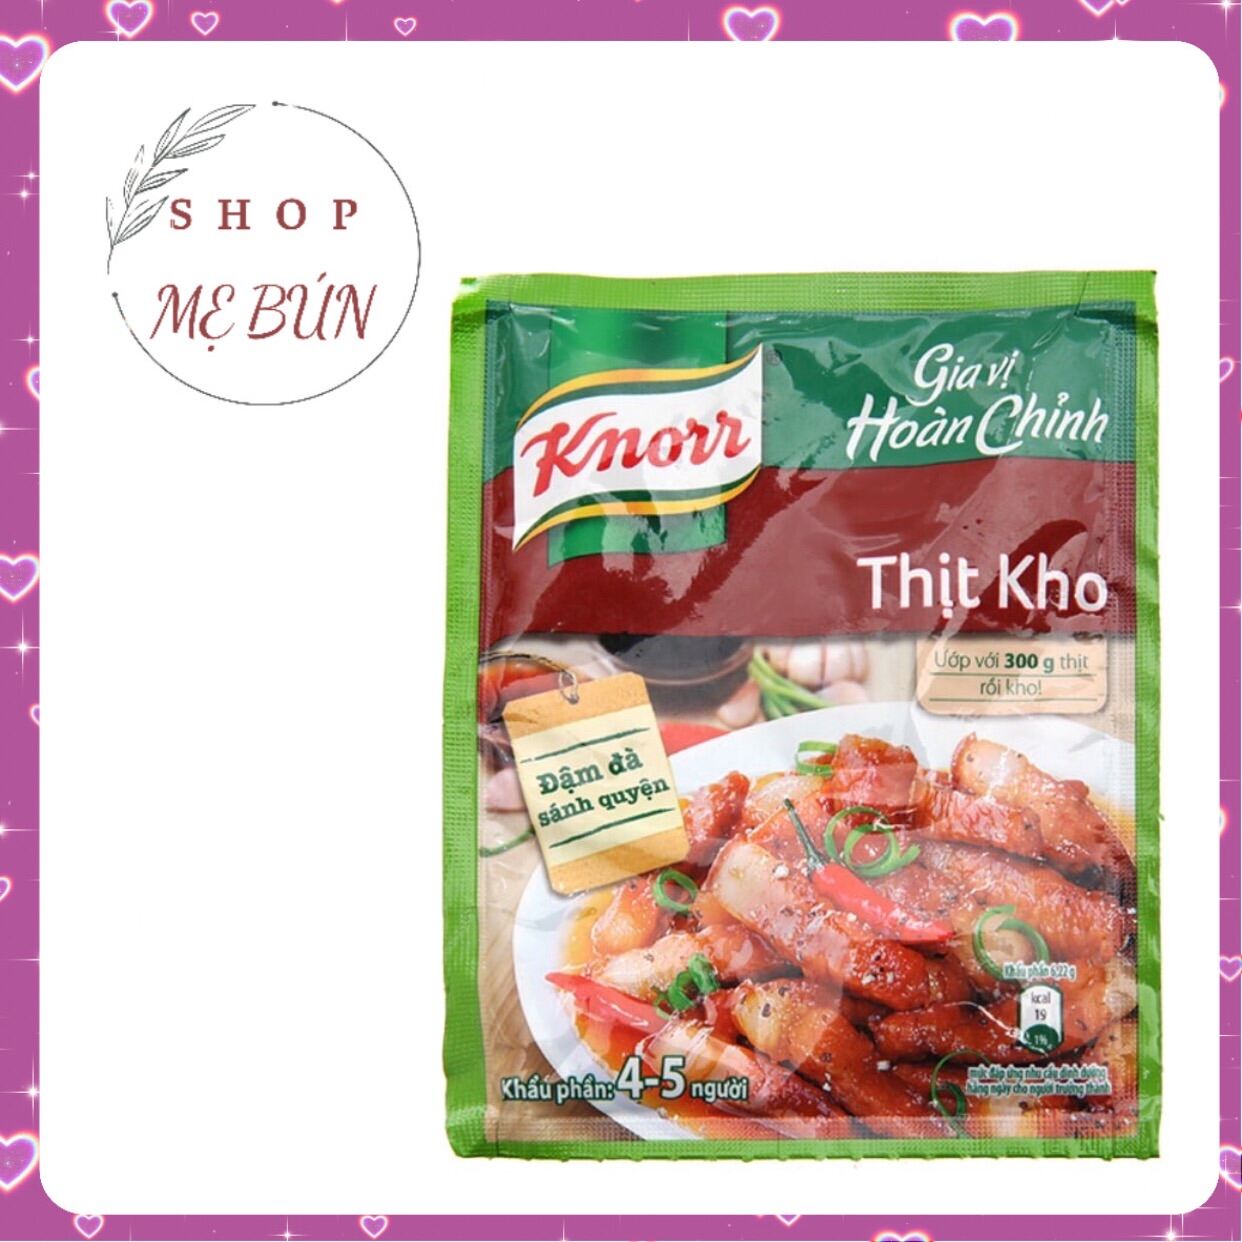 Gia vị hoàn chỉnh Thịt Kho Knorr gói 28g thumbnail